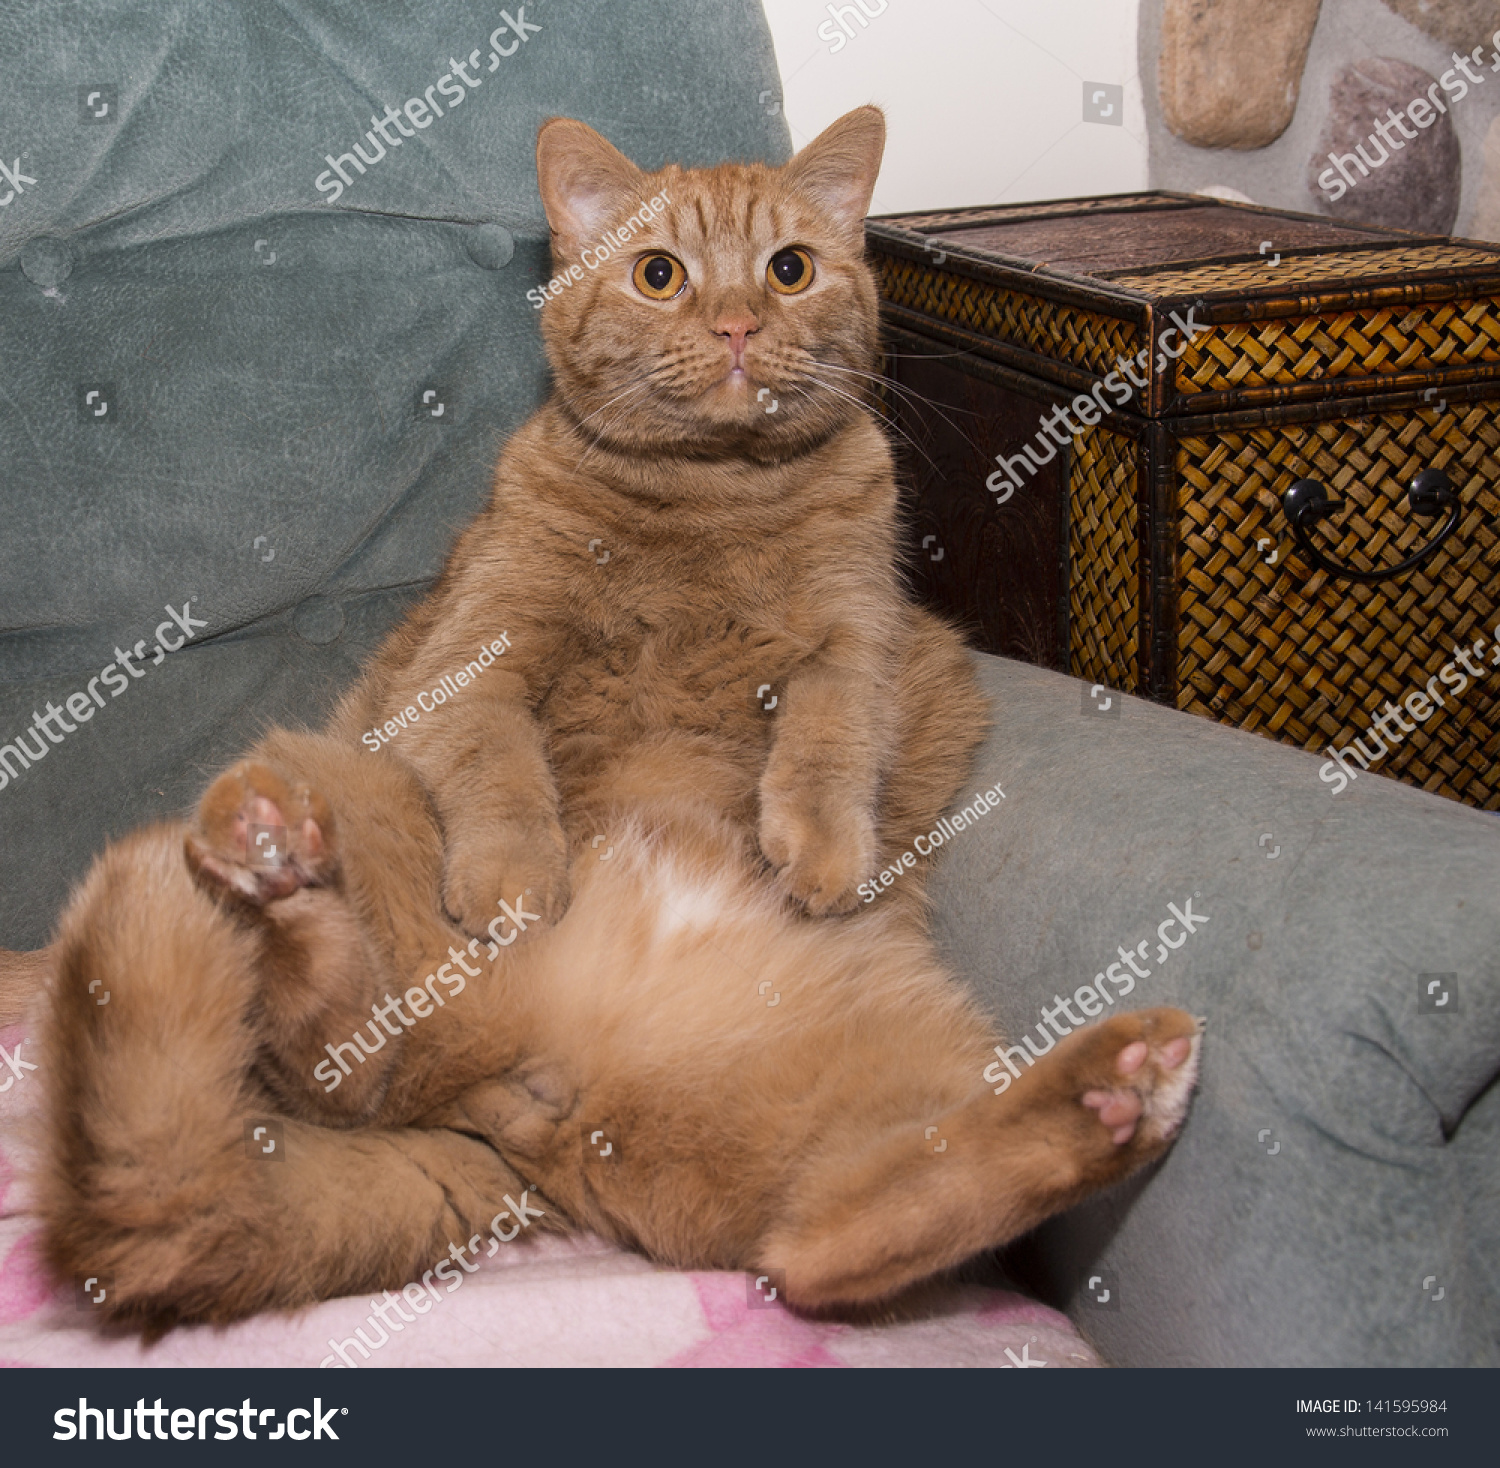  Fat  Orange Cat  Sitting On Lounge  Stock Photo 141595984 